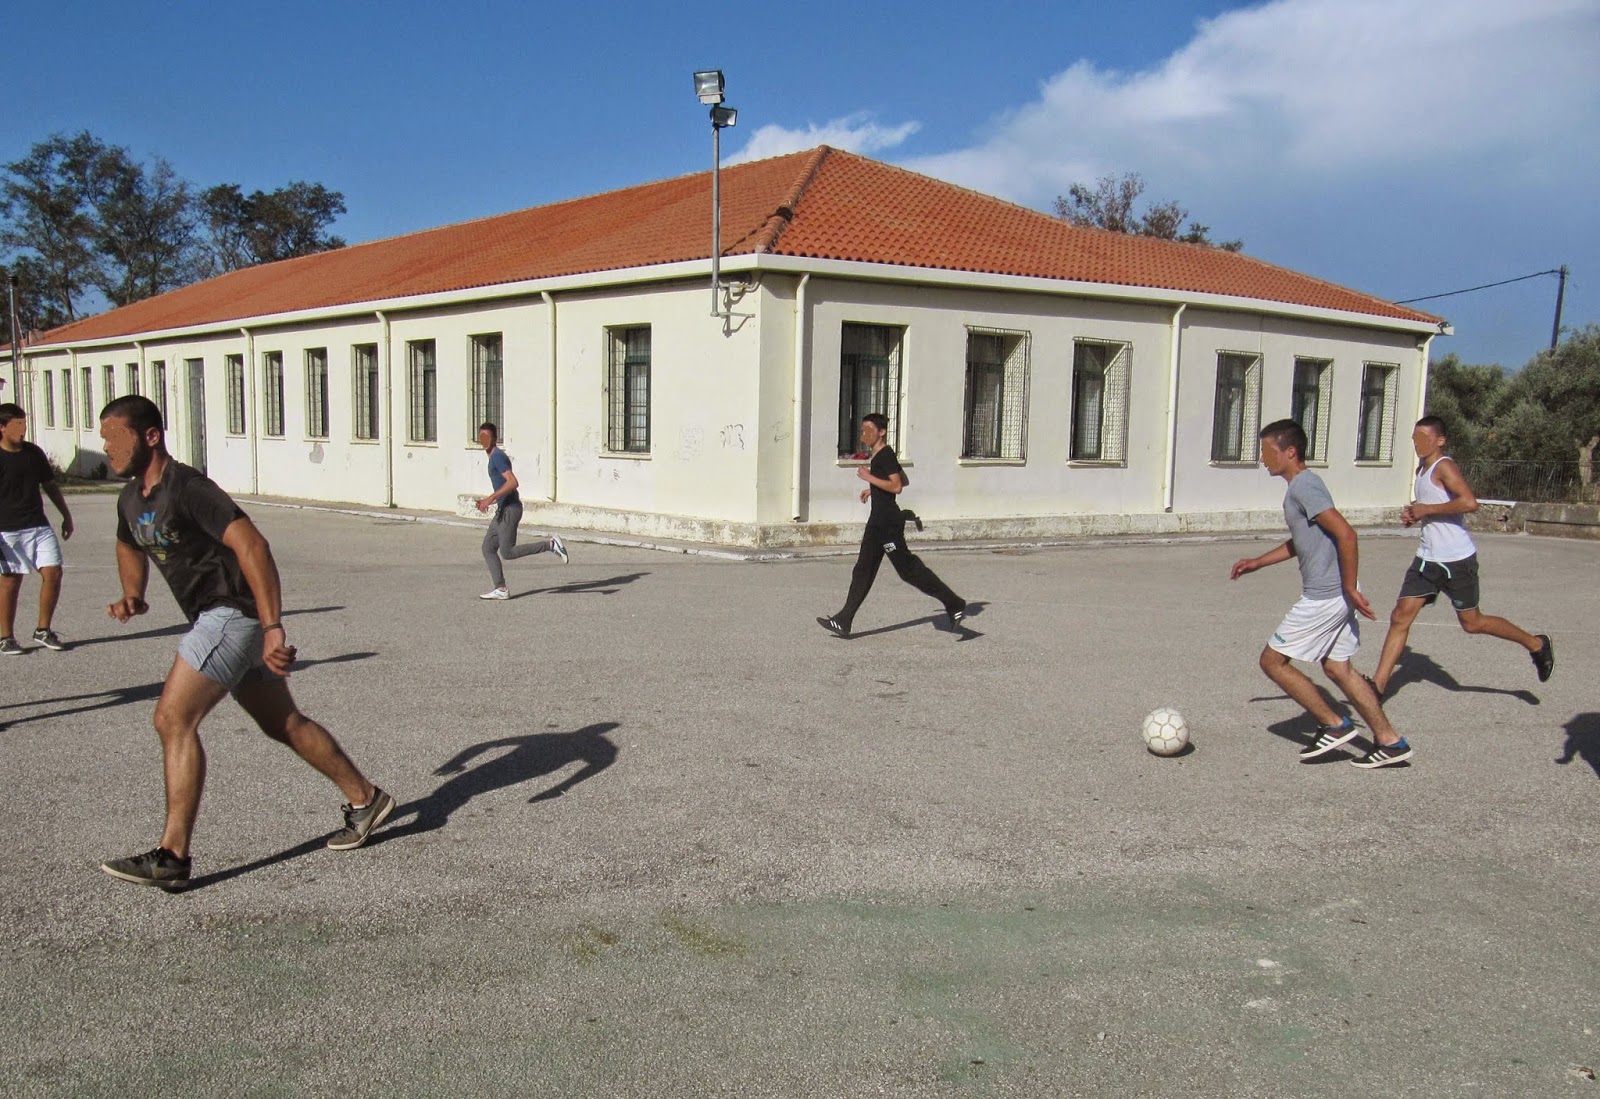 Έκλεισαν το σχολείο στο Τεφέλι της Κρήτης: Καταγγελία της Αγωνιστικής Παρέμβασης Εκπαιδευτικών